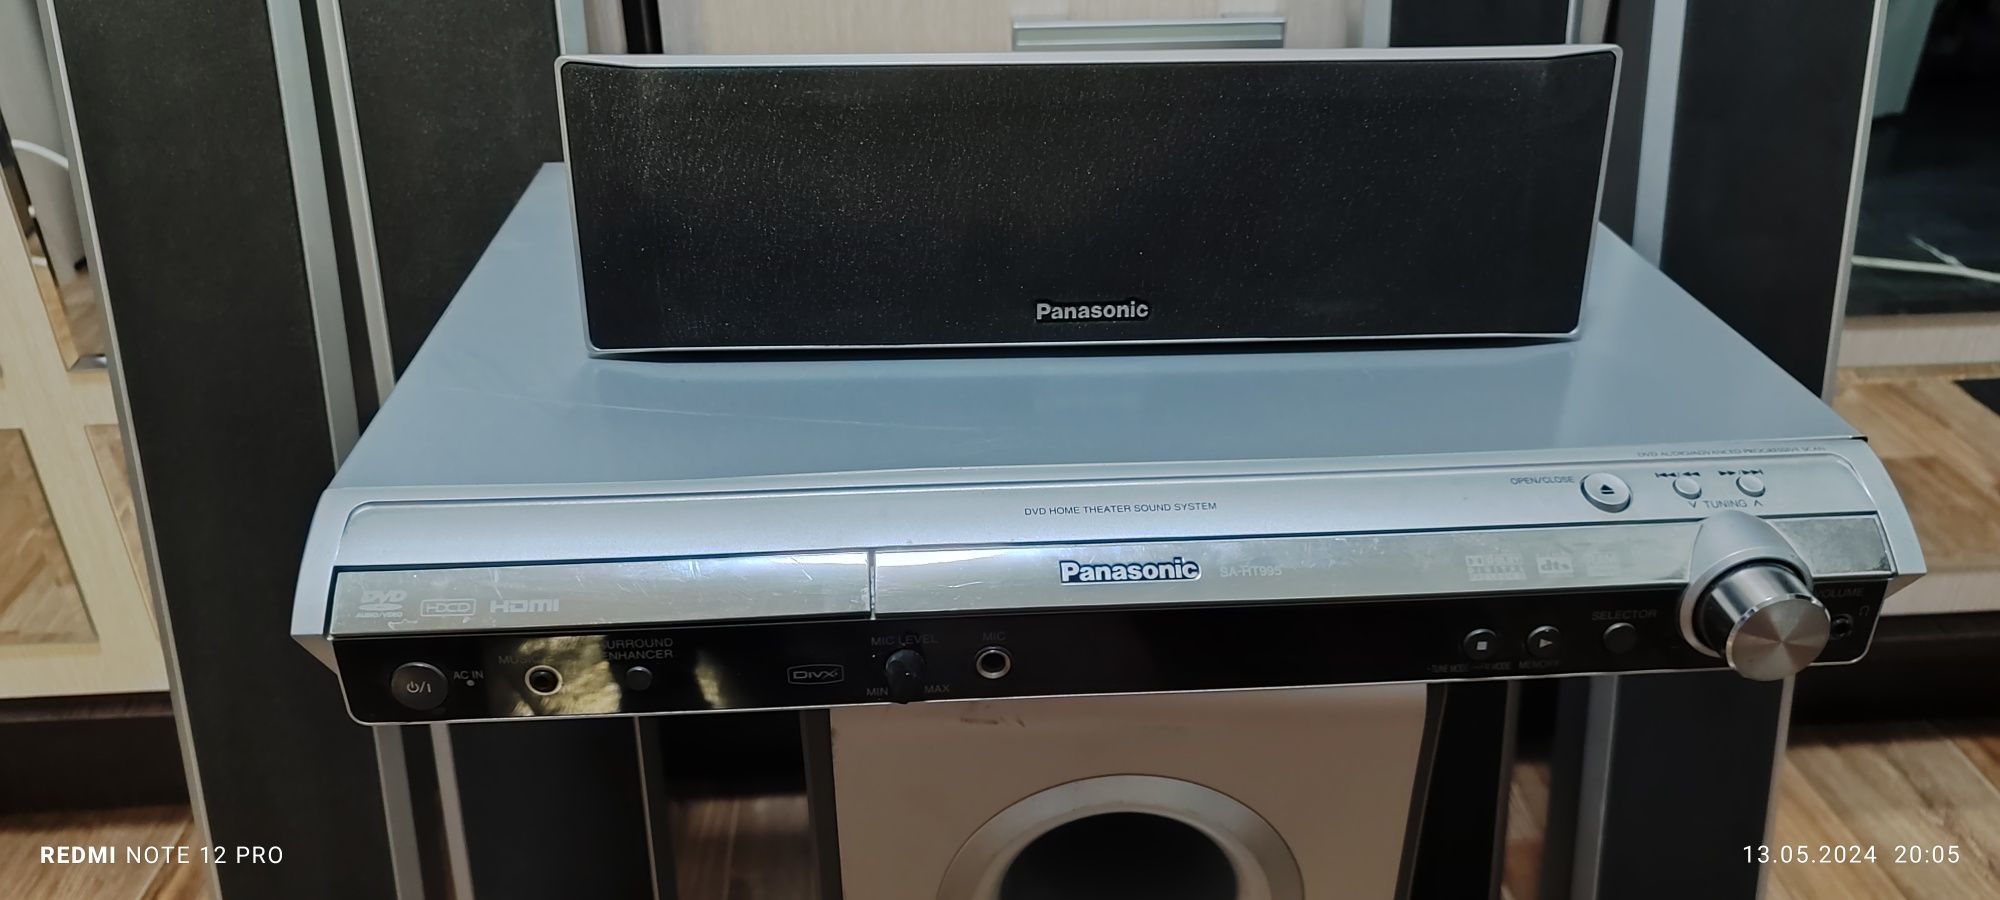 Стерео система Panasonic